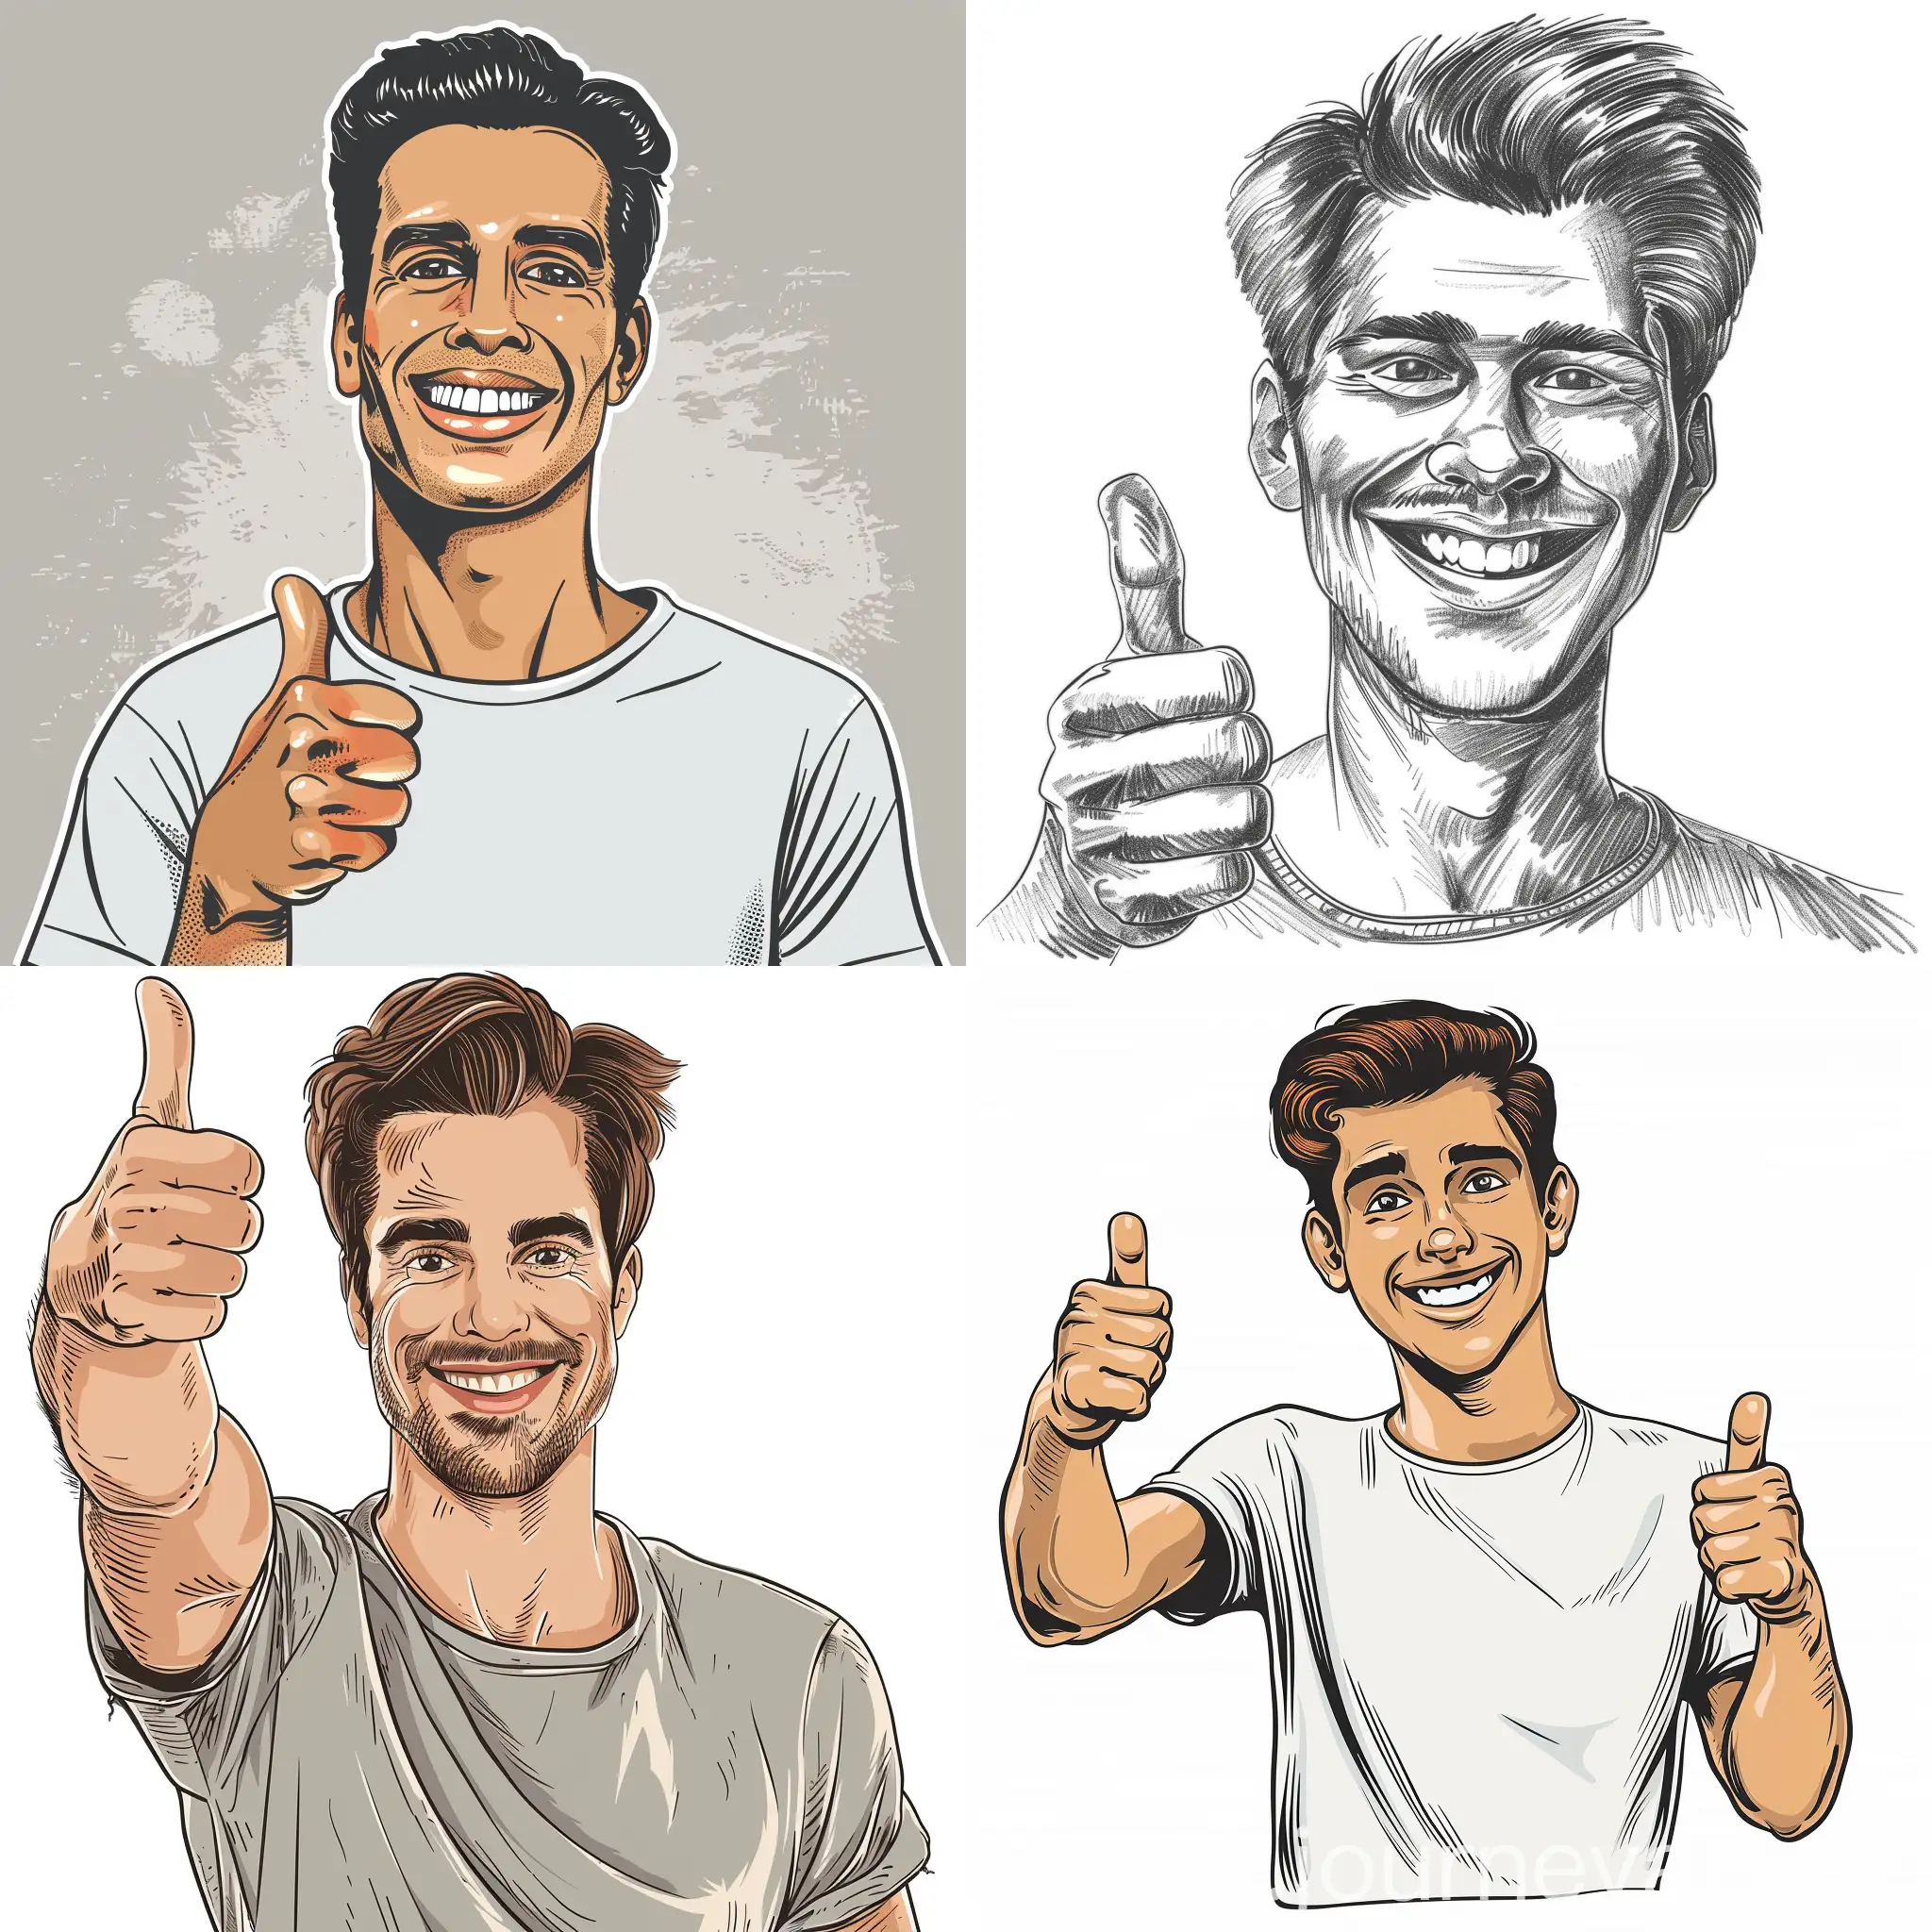 счастливый мужчина нарисованный в стиле пин апа улыбается и показывает палец вверх